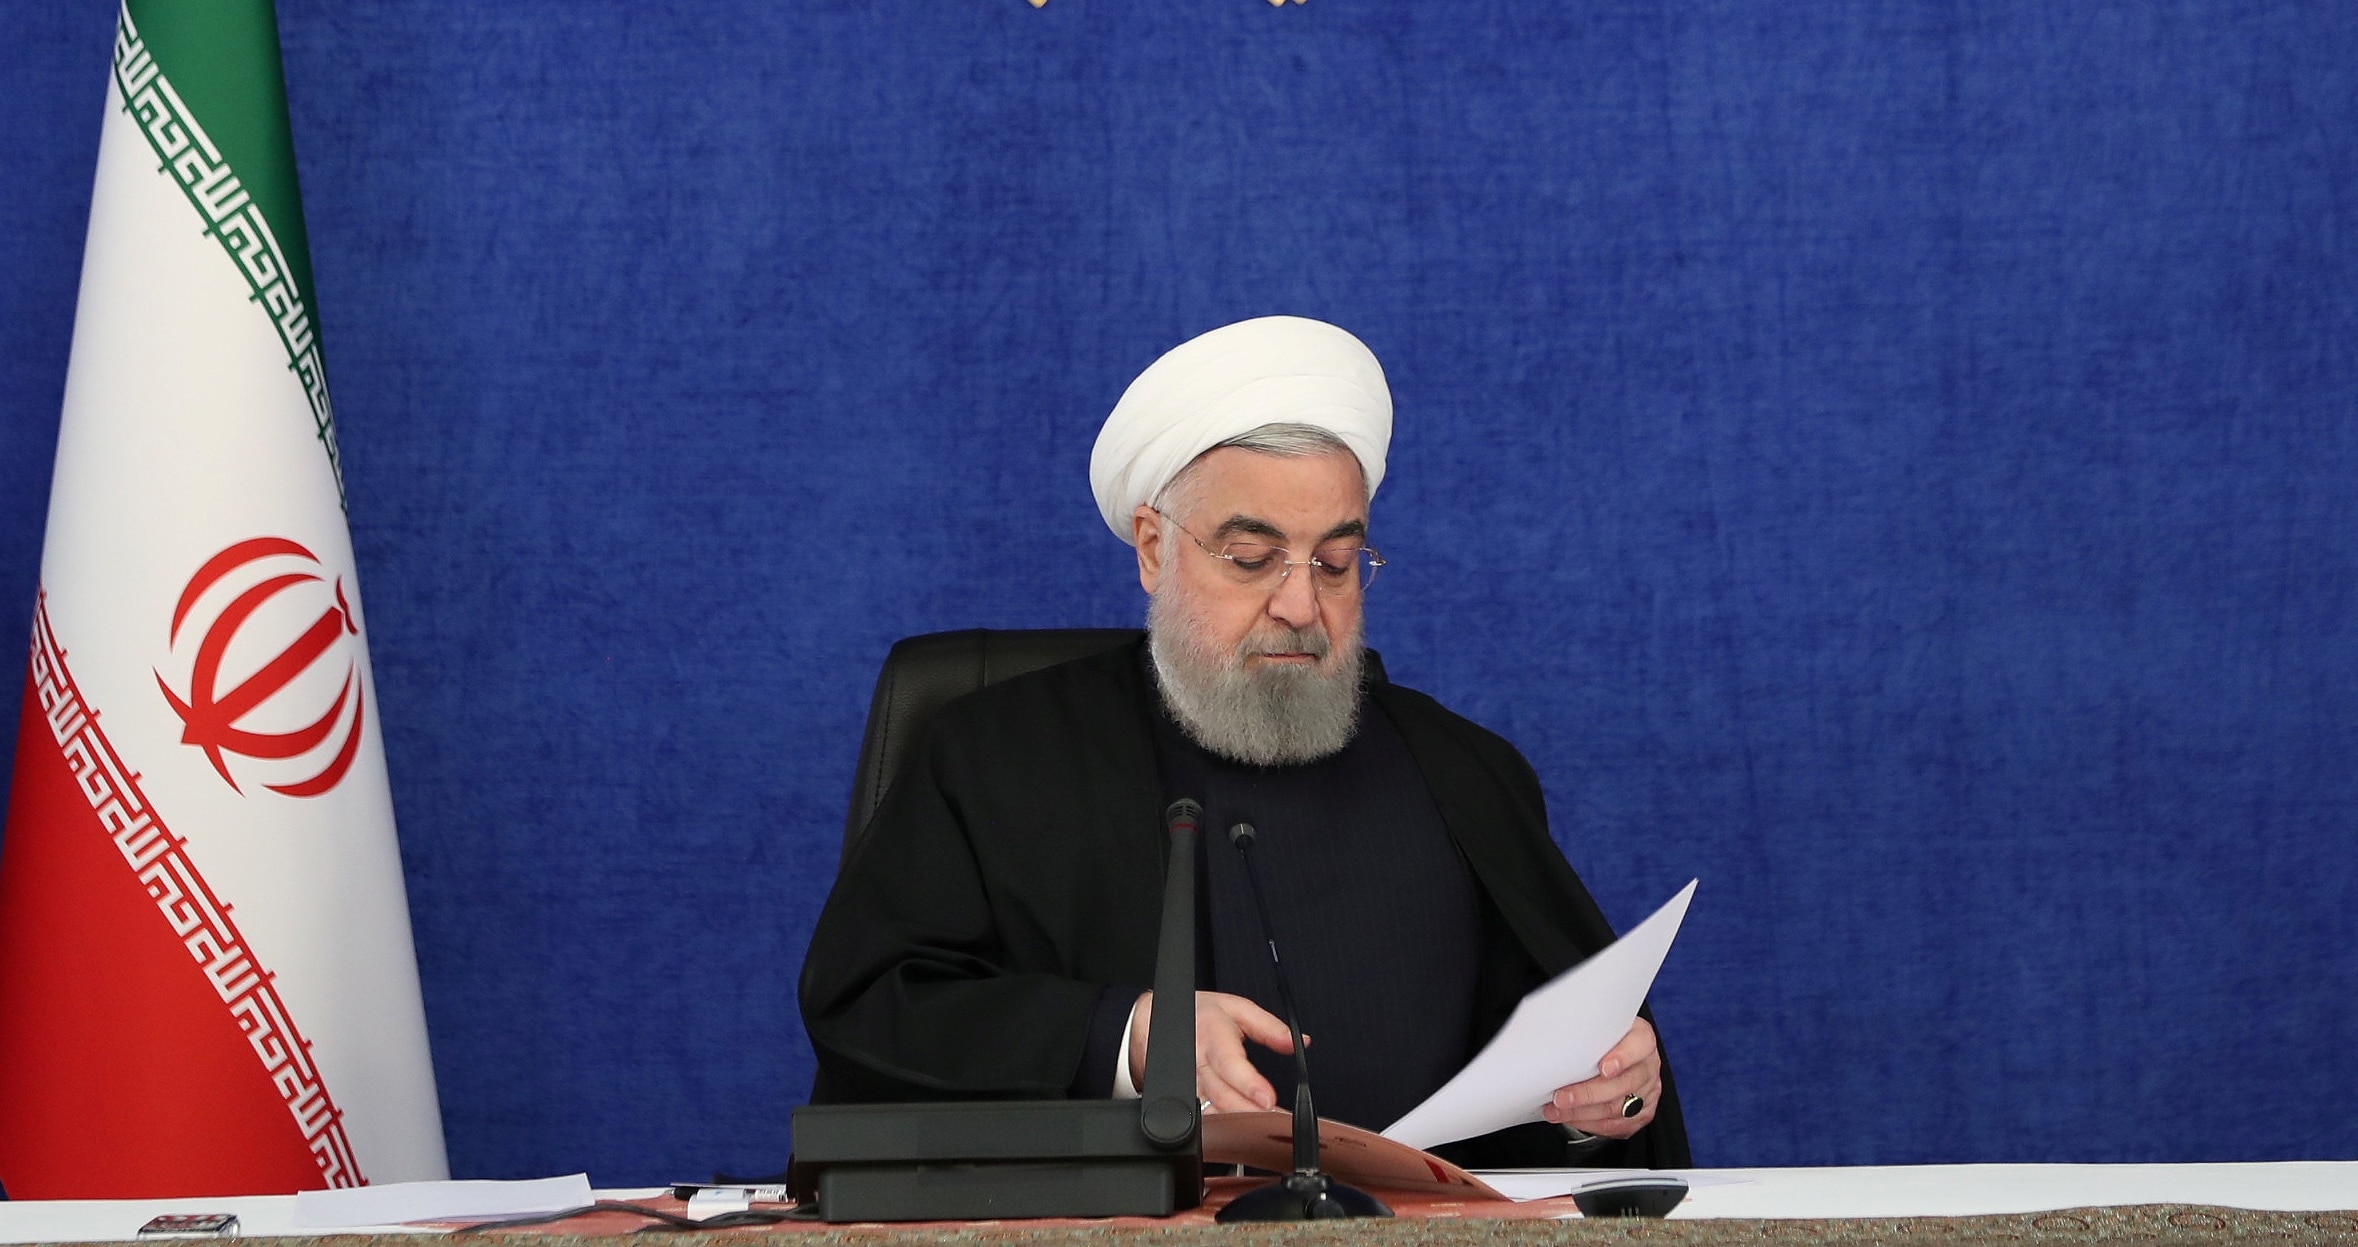 سند منتشر شده درمورد پرداخت پاداش بازنشستگی به دکتر روحانی فاقد صحت است